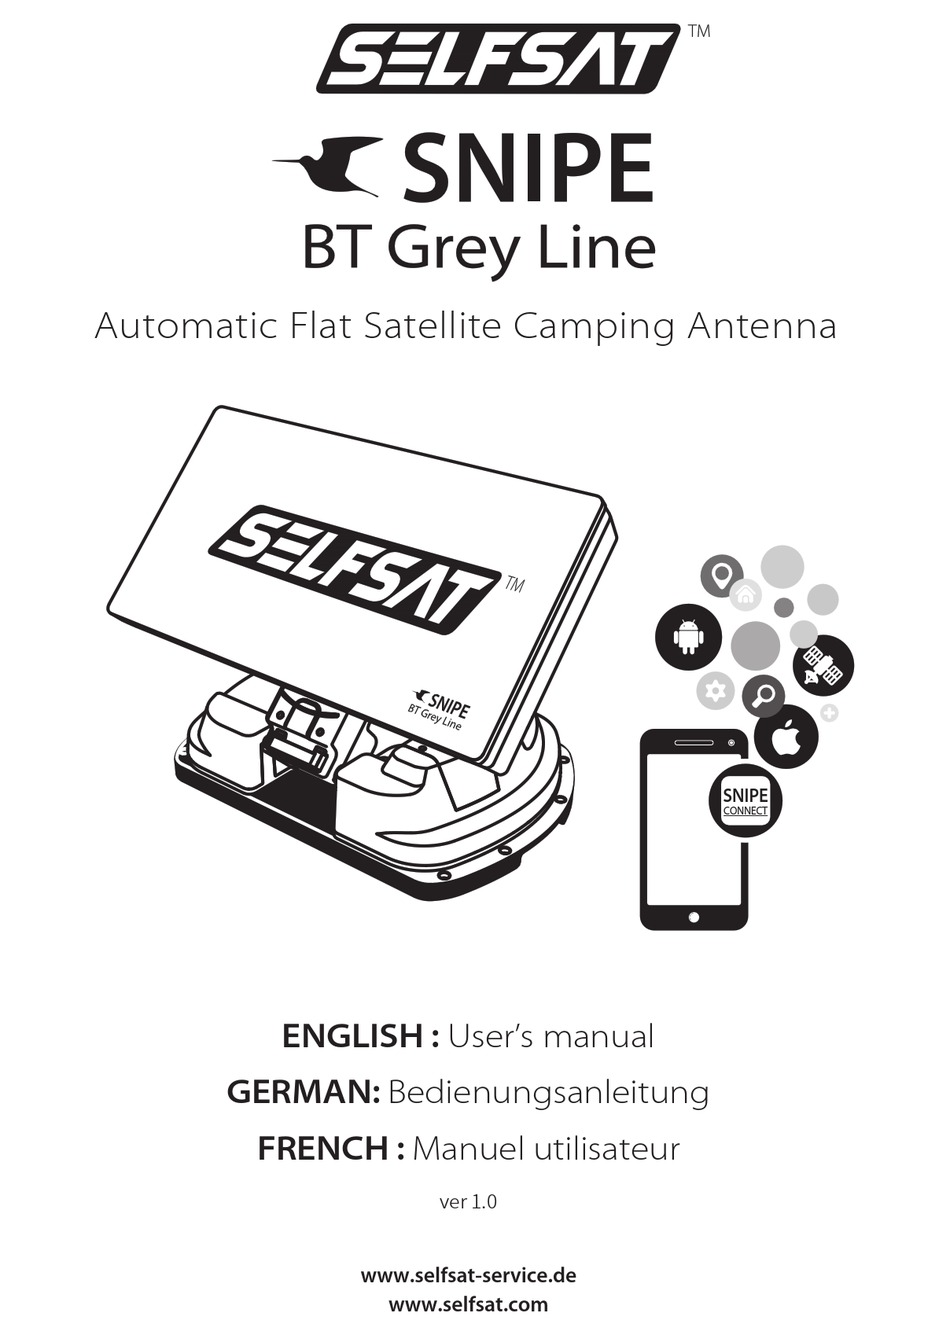 SELFSAT Snipe BT Grey Line Single automatische Sat Antenne